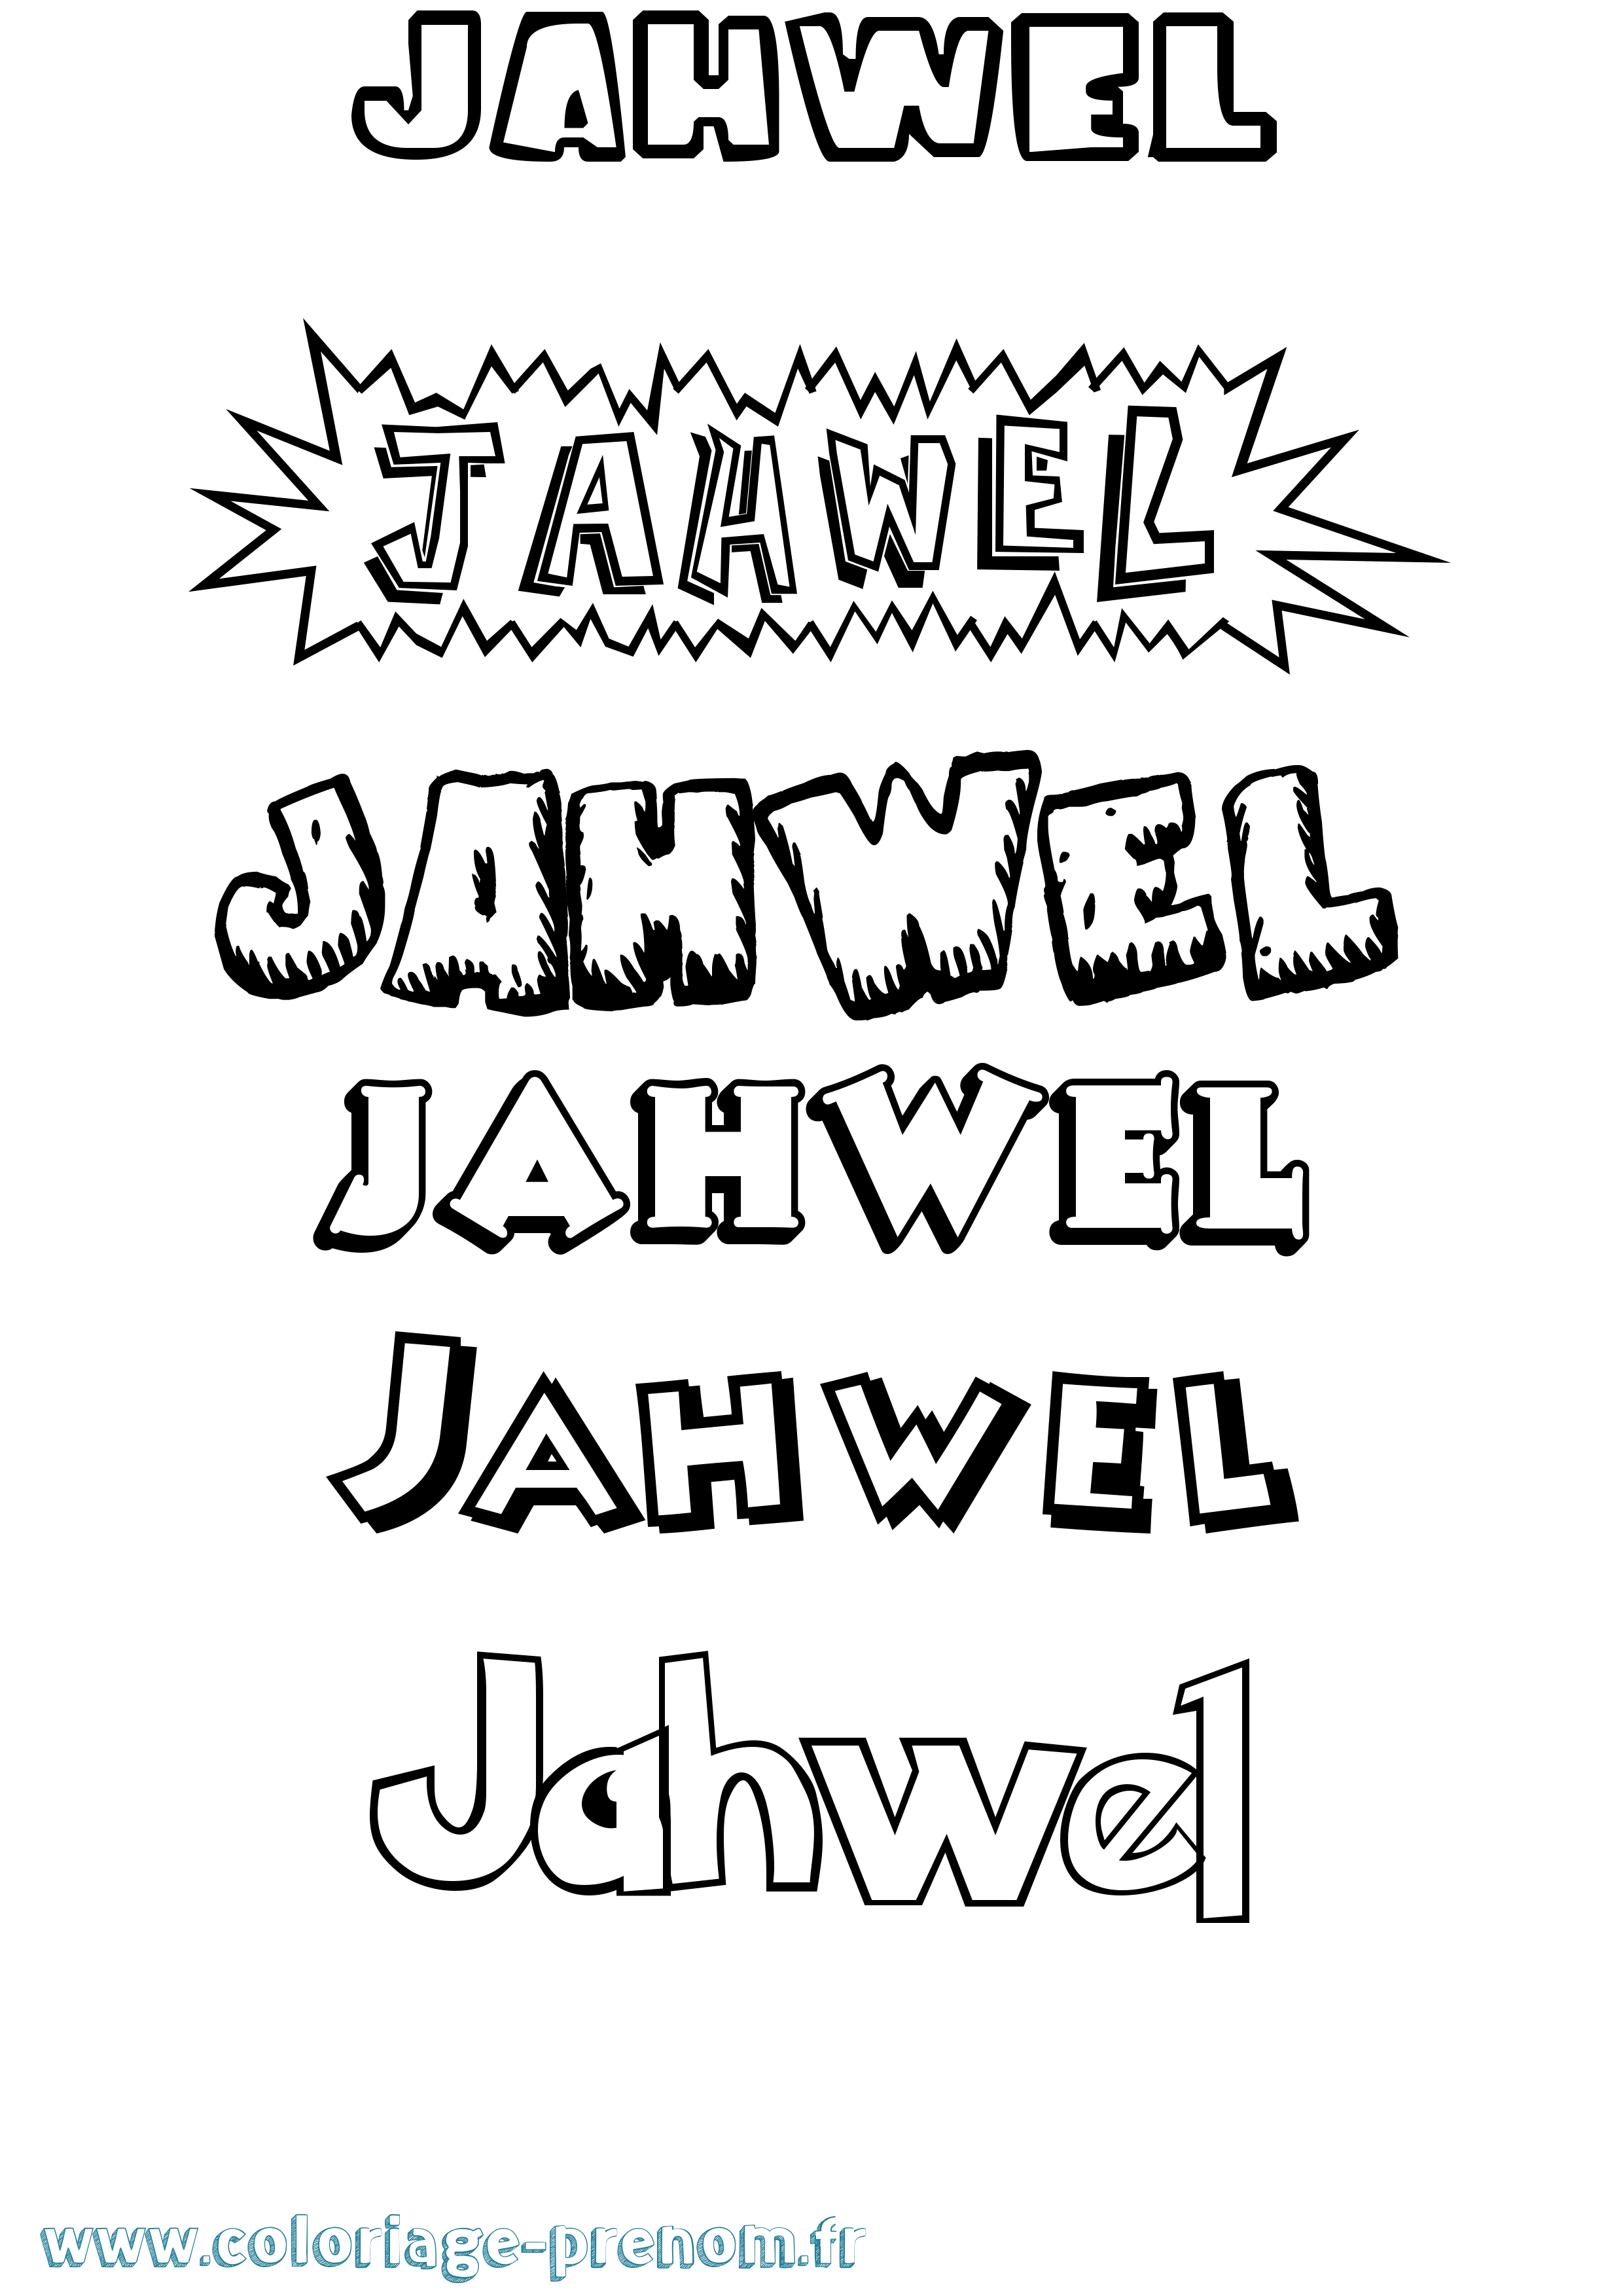 Coloriage prénom Jahwel Dessin Animé